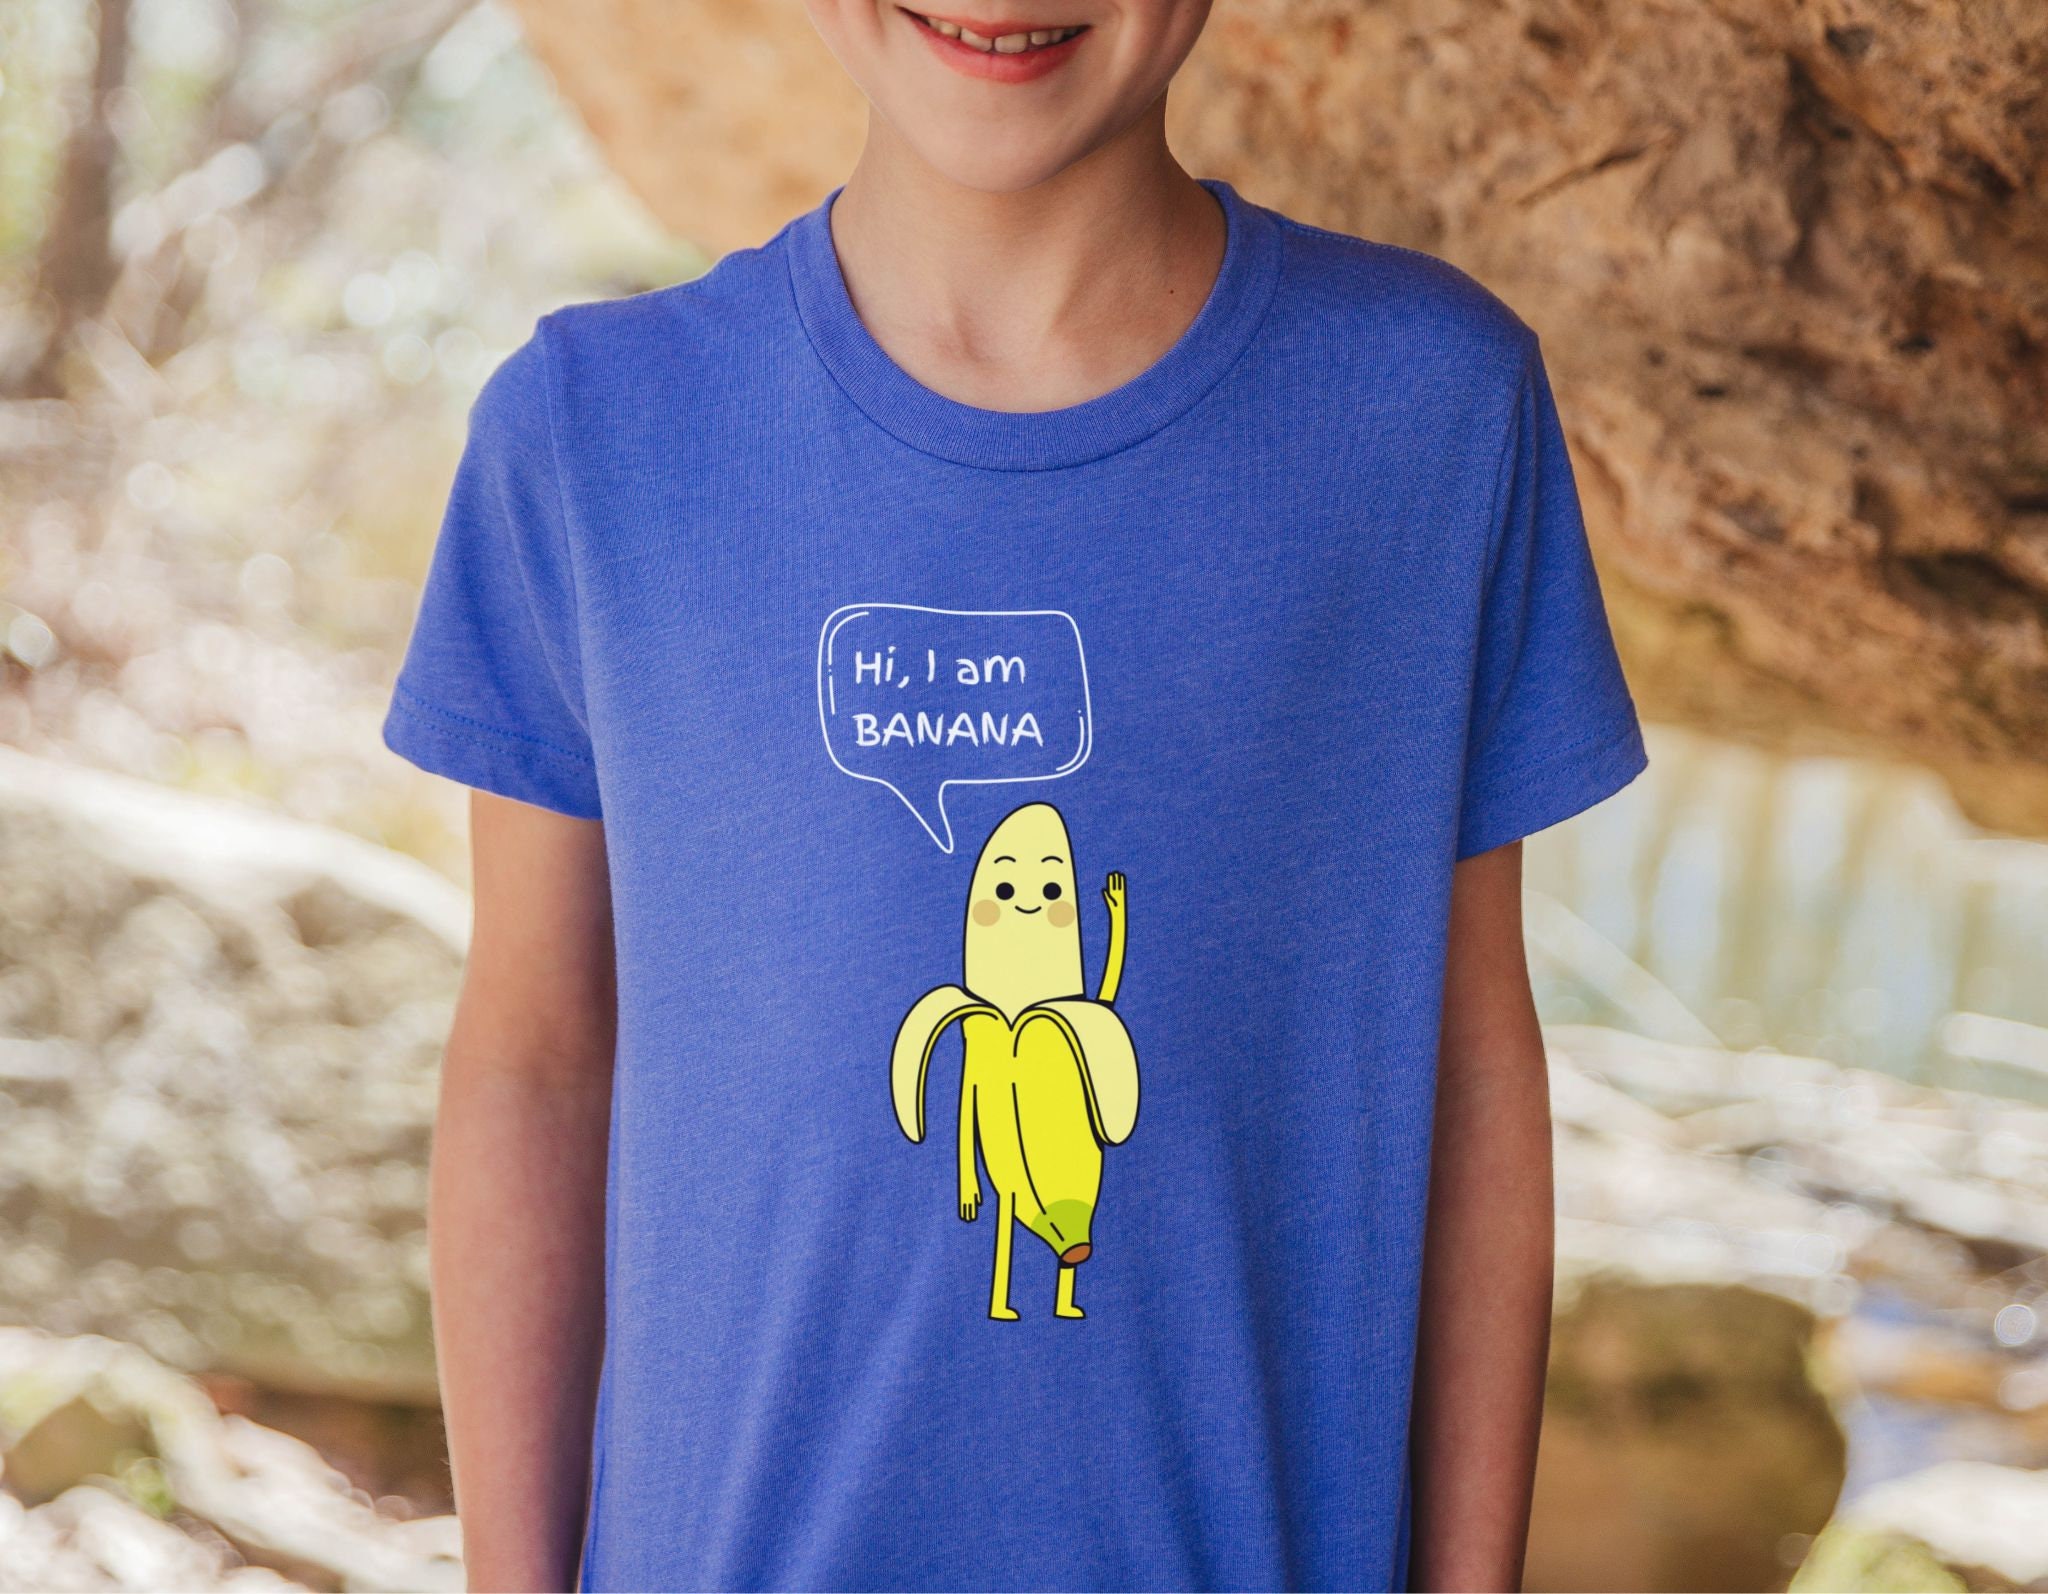 Banana Shirt Funny Etsy T Shirt Kids Banana Youth Bananas Random Tshirt - Top Kids Tee Quote Silly Saying